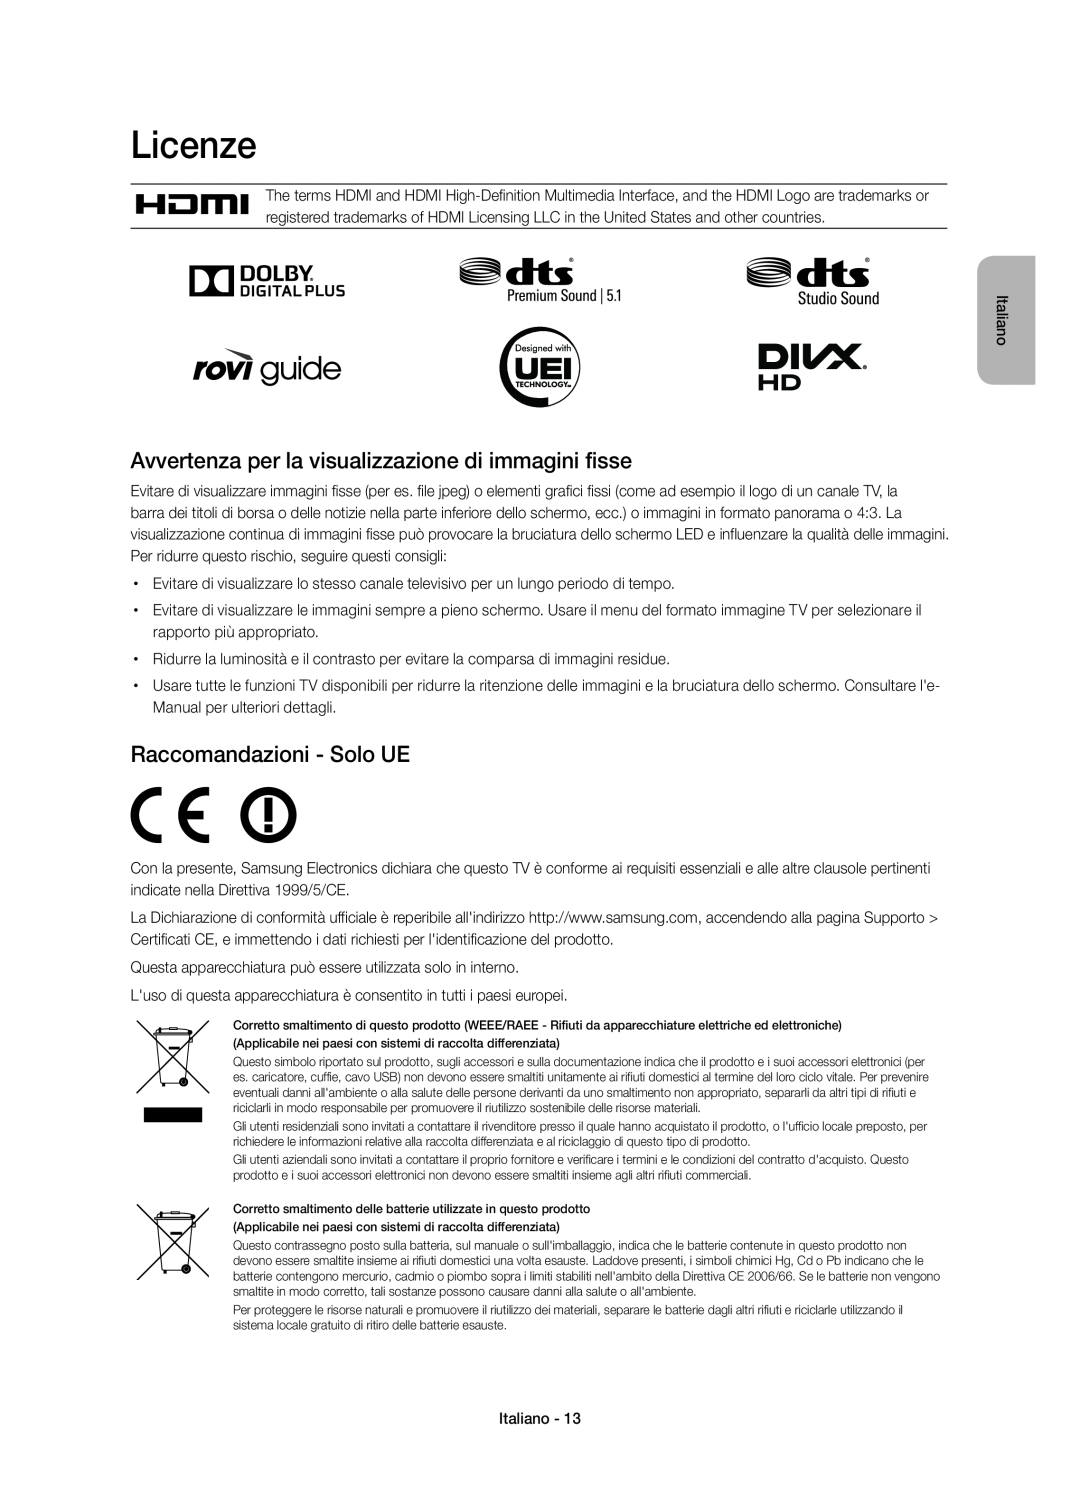 Samsung UE40H7000SZXZT manual Licenze, Avvertenza per la visualizzazione di immagini fisse, Raccomandazioni - Solo UE 